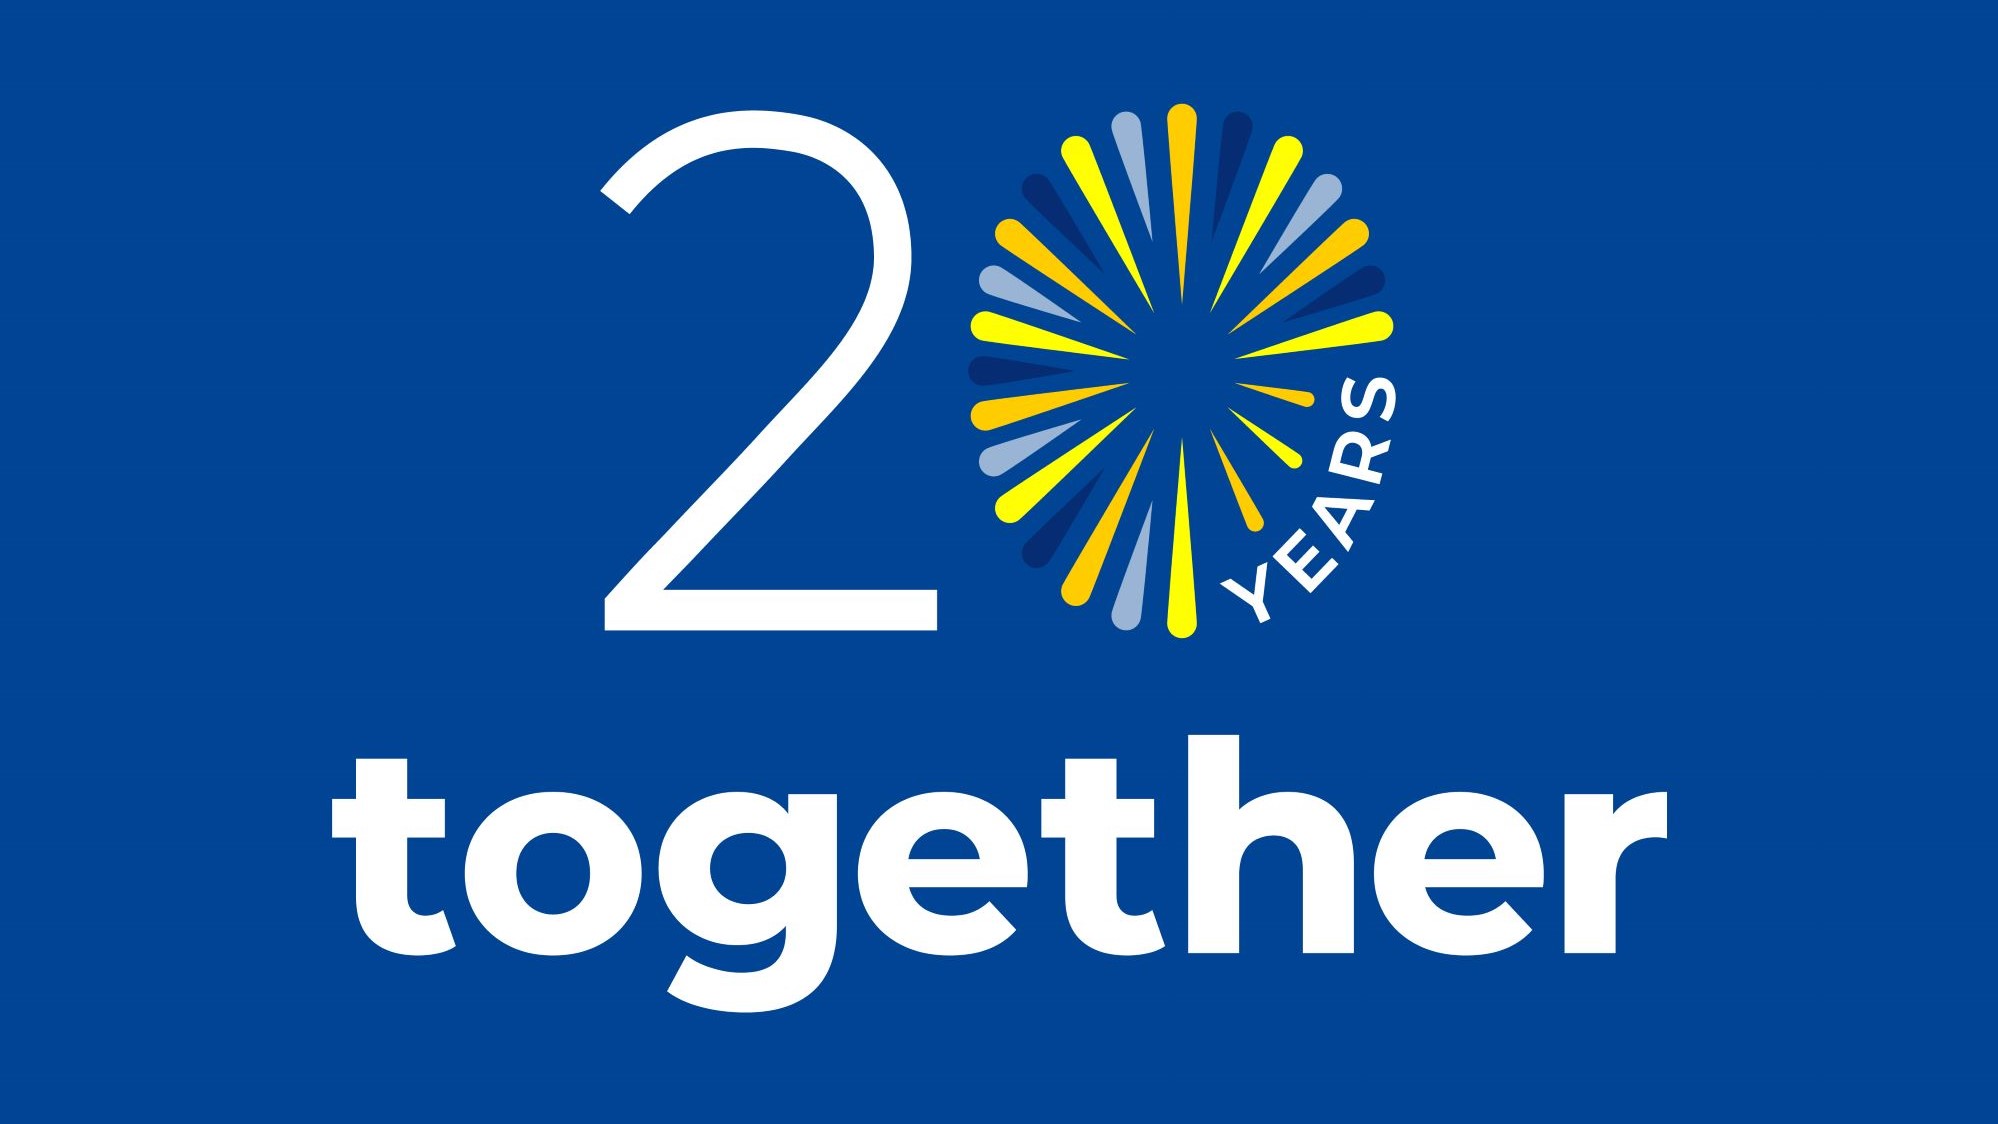 20 year anniversary logo